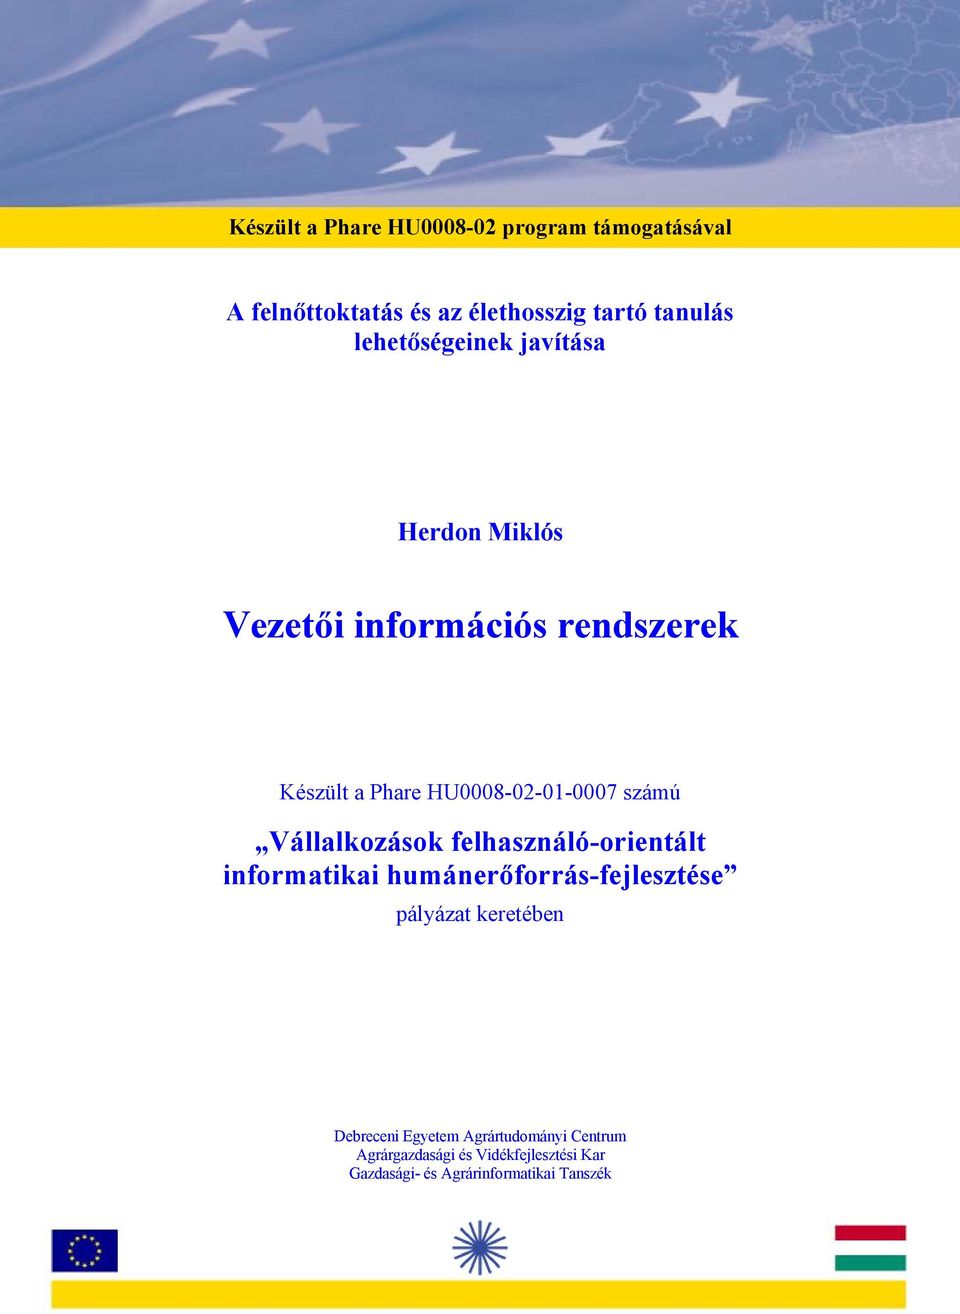 felhasználó-orientált informatikai humánerőforrás-fejlesztése pályázat keretében Debreceni